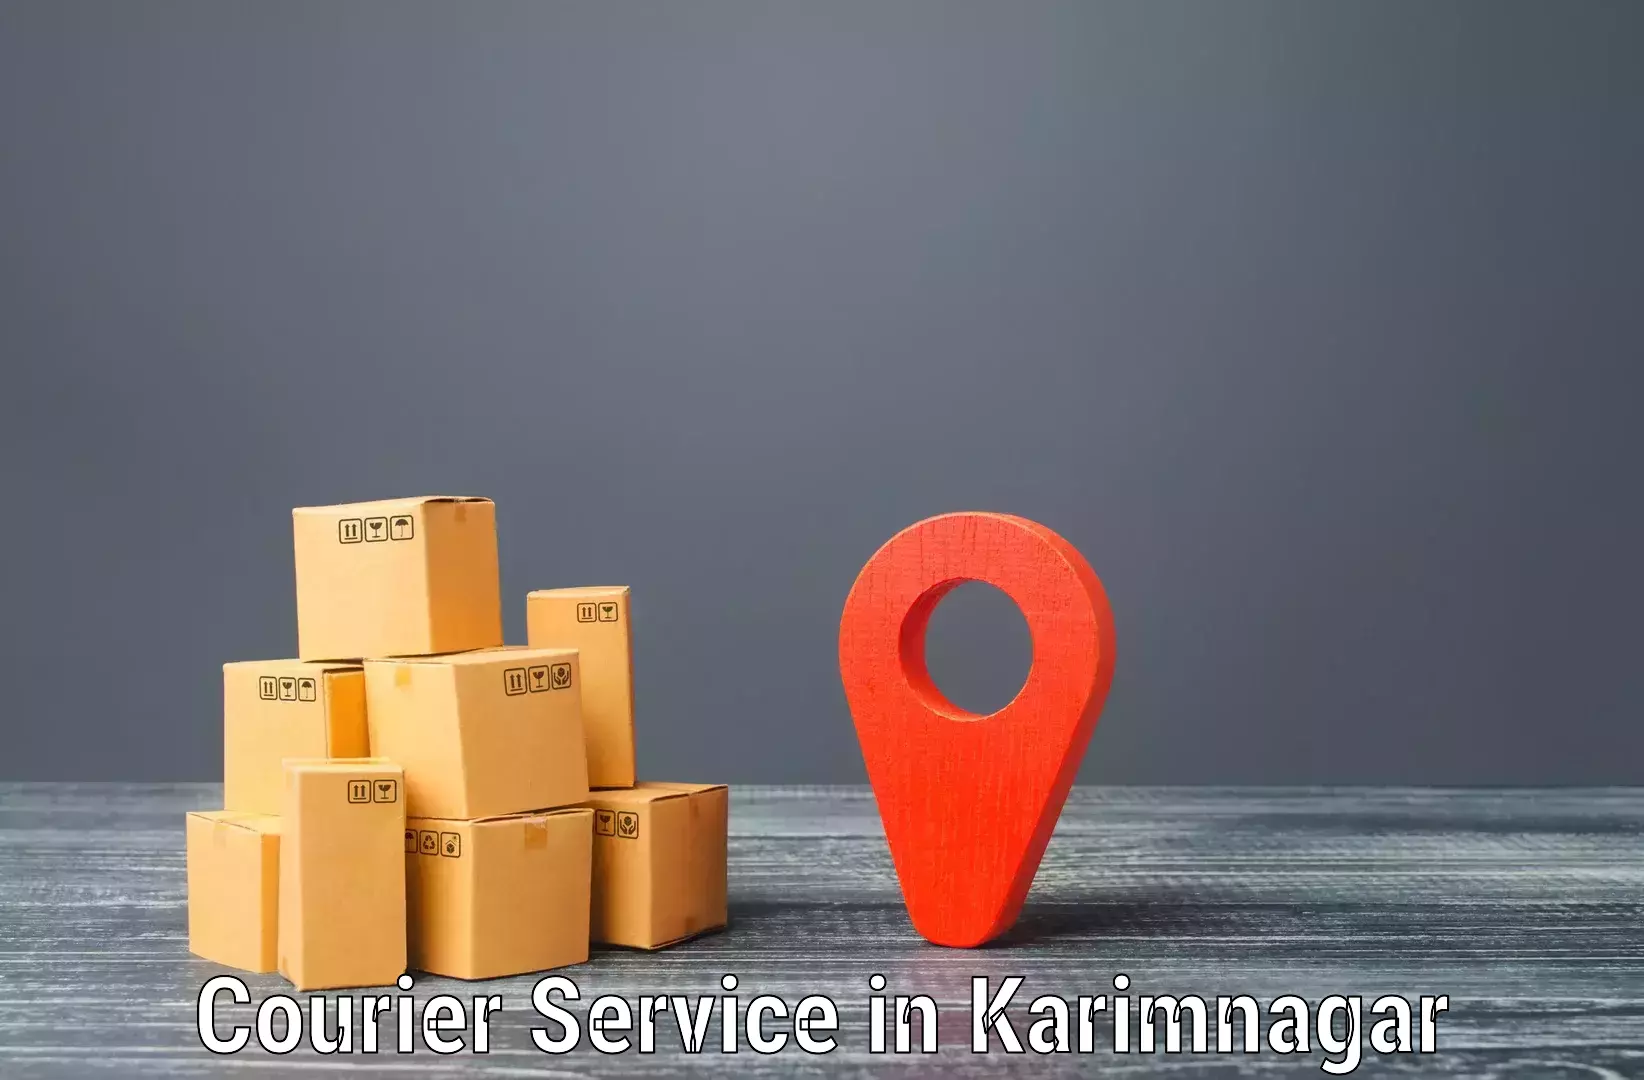 Parcel service for businesses in Karimnagar